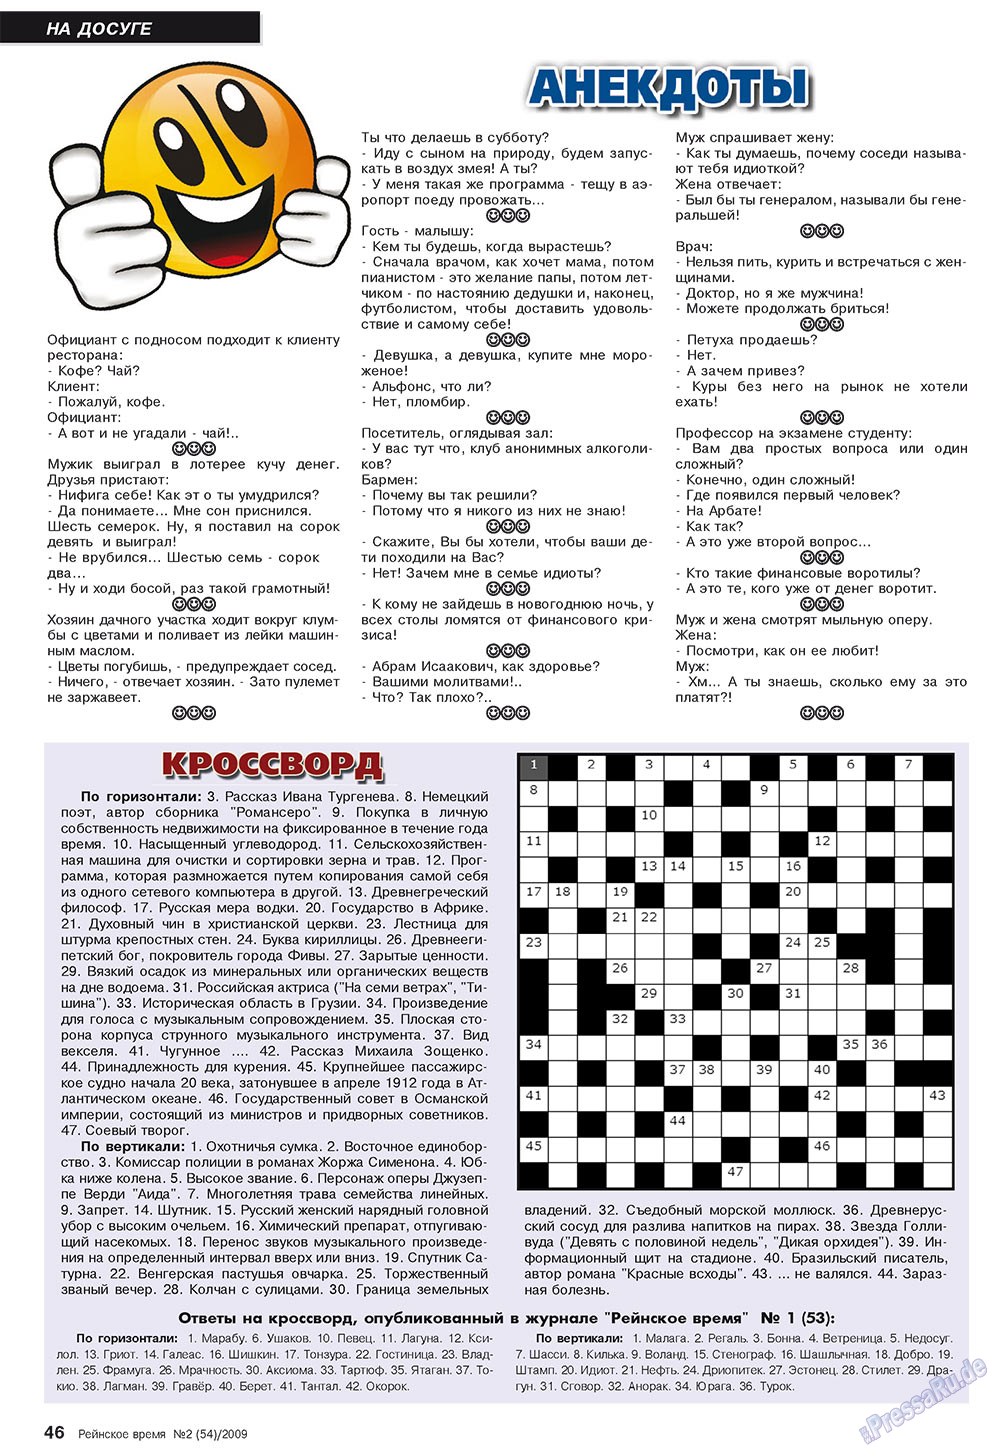 Рейнское время, журнал. 2009 №2 стр.46